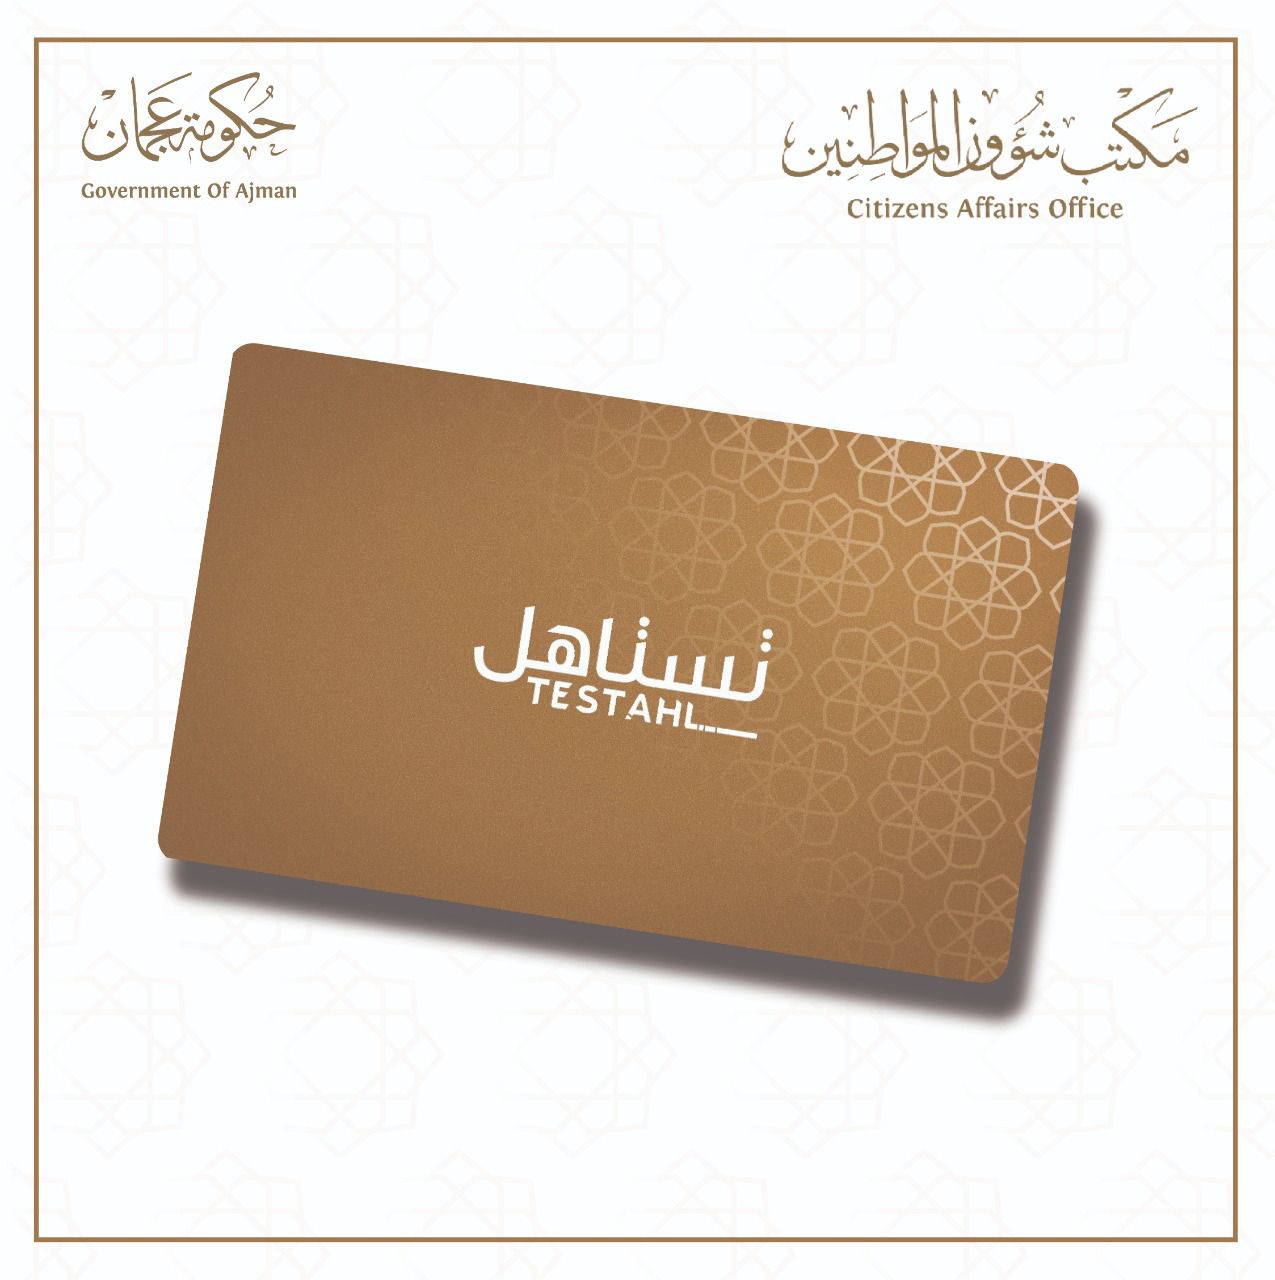 مكتب شؤون المواطنين في عجمان يطلق مبادرة تحت عنوان "بطاقة تستاهل " 